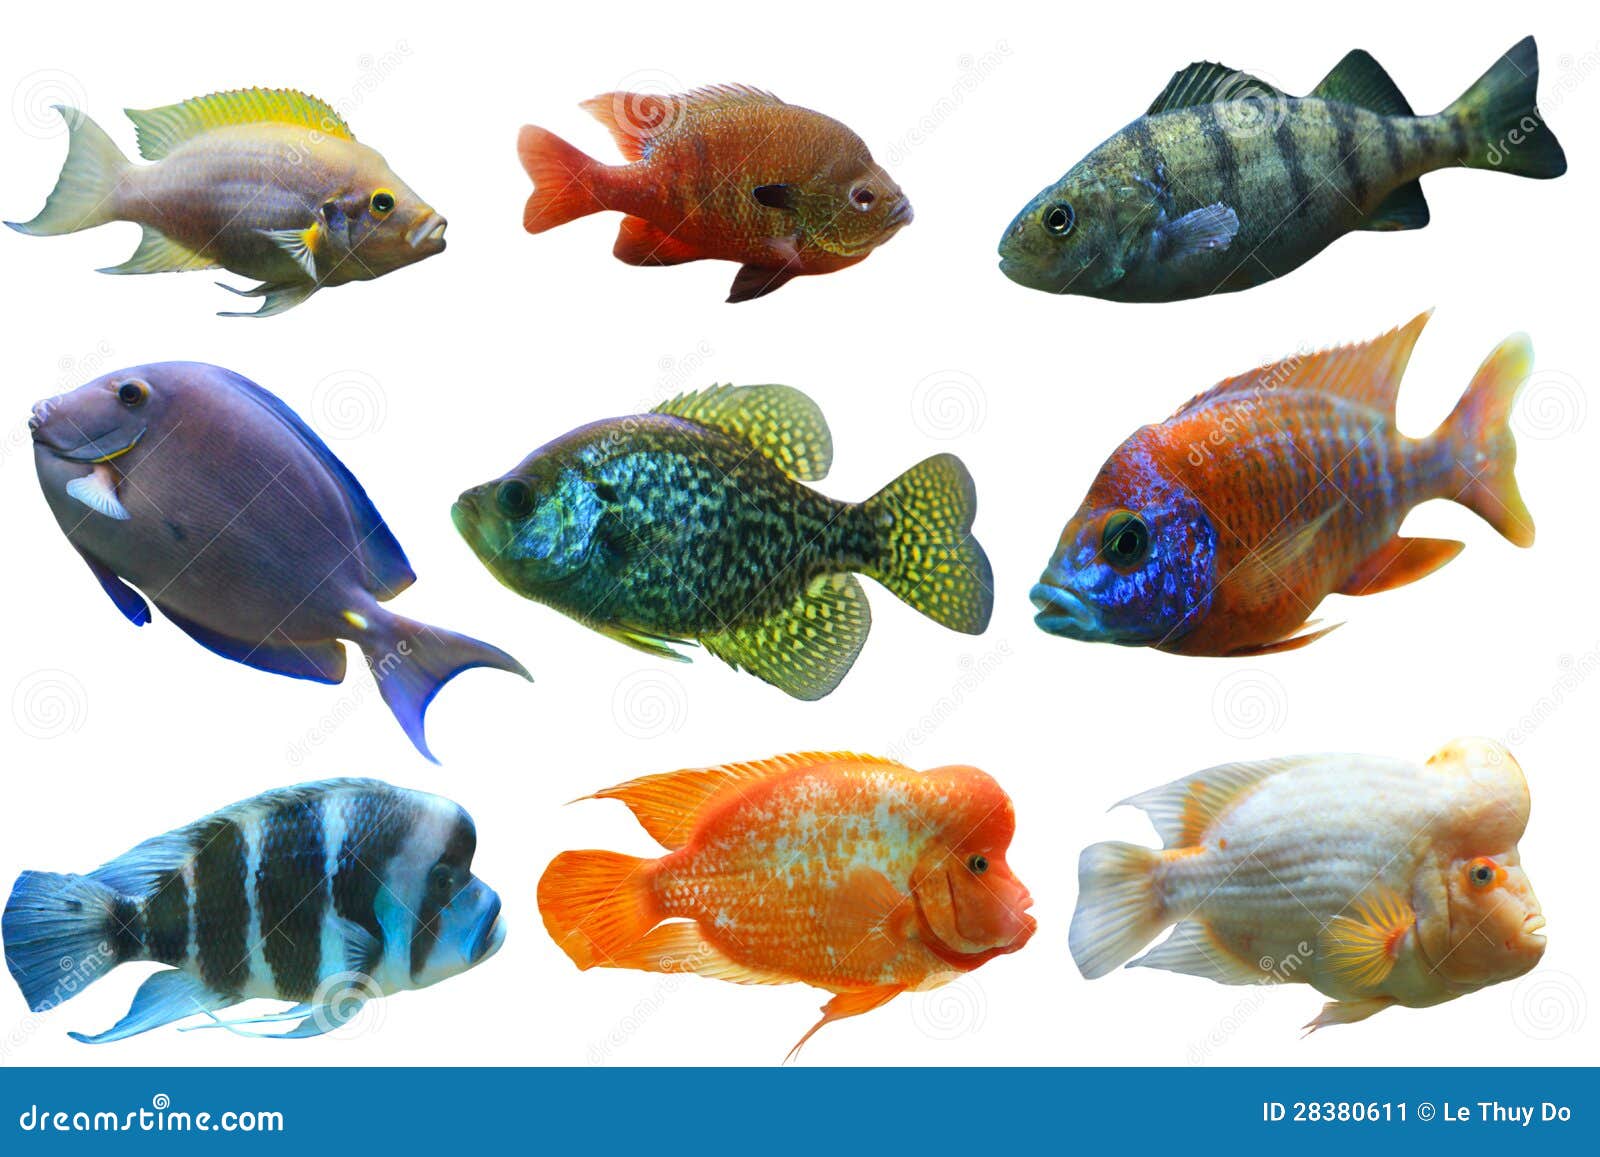 Аквариумные рыбы для детей. Рыбки для аквариума. Разноцветные рыбы для детей. Аквариумные рыбки для детей. Разноцветные рыбки для печати.